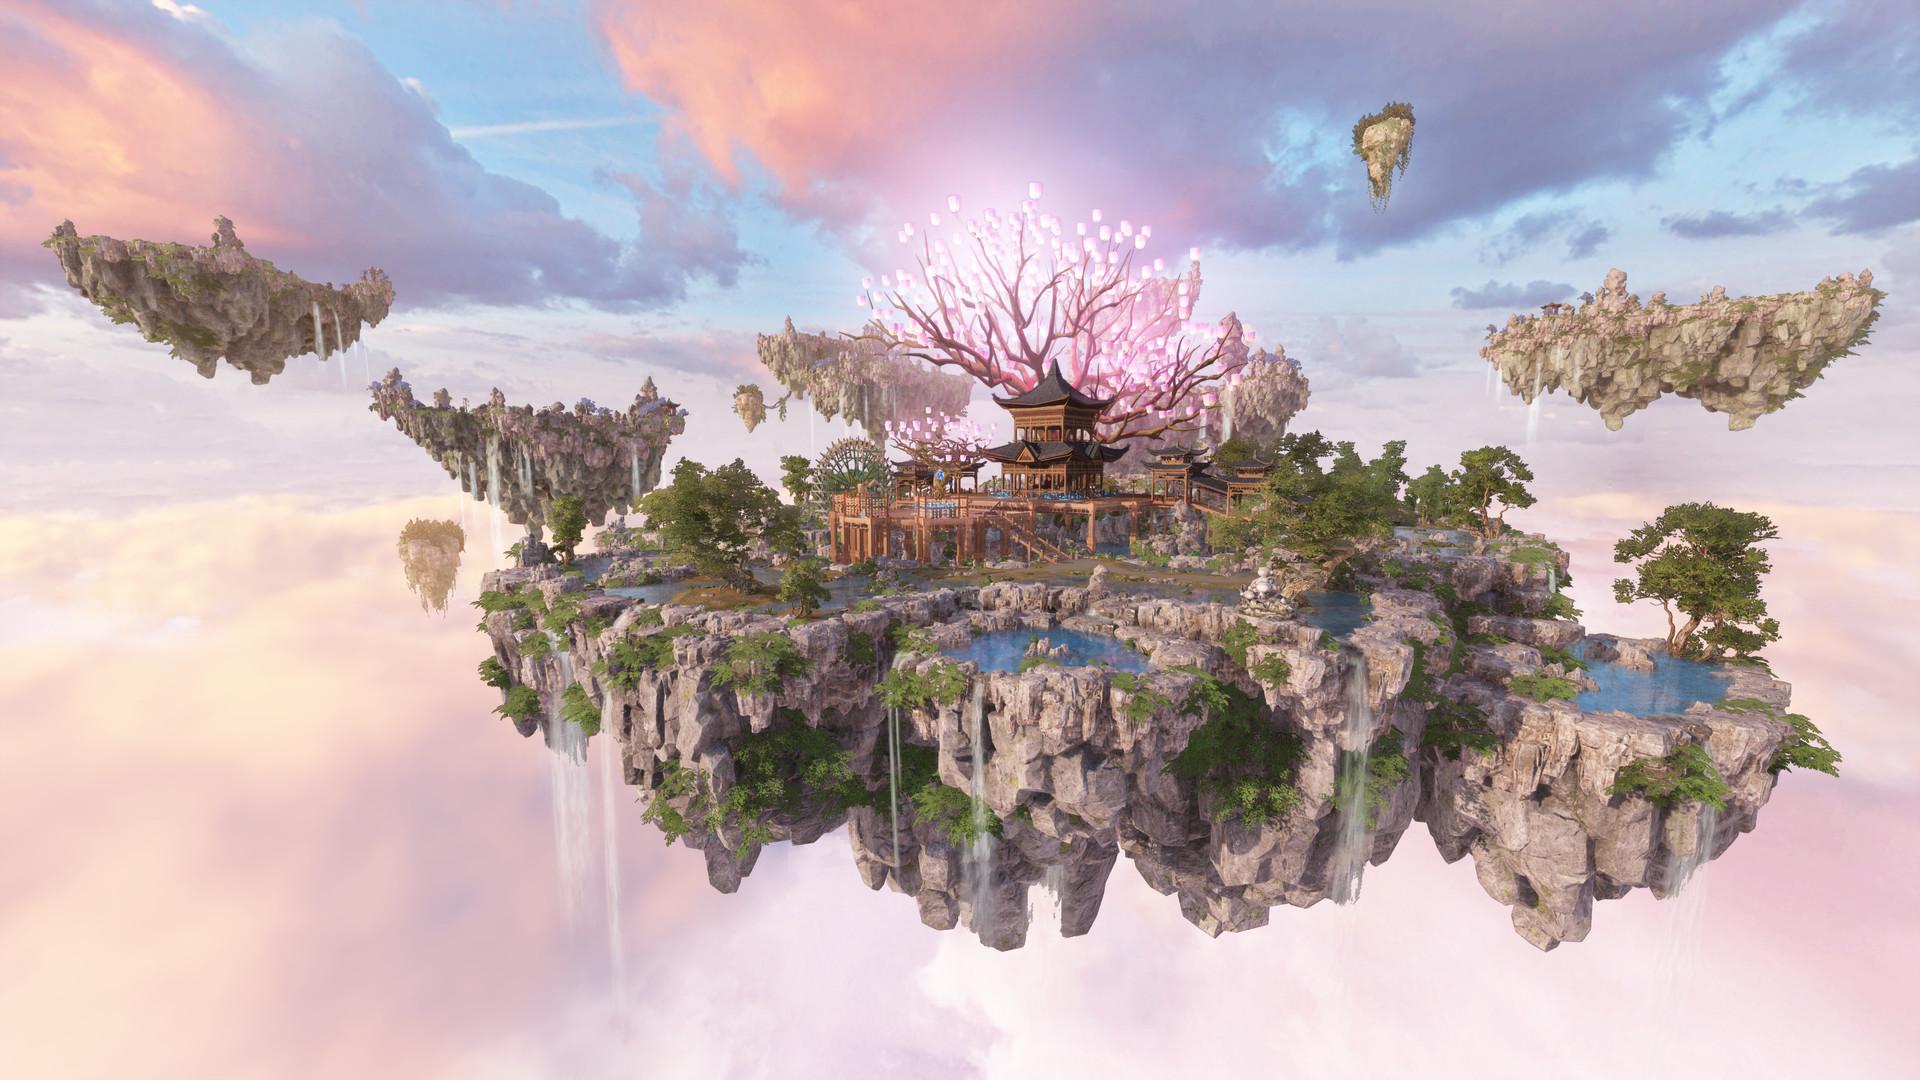 Screenshot №11 from game Swords of Legends Online